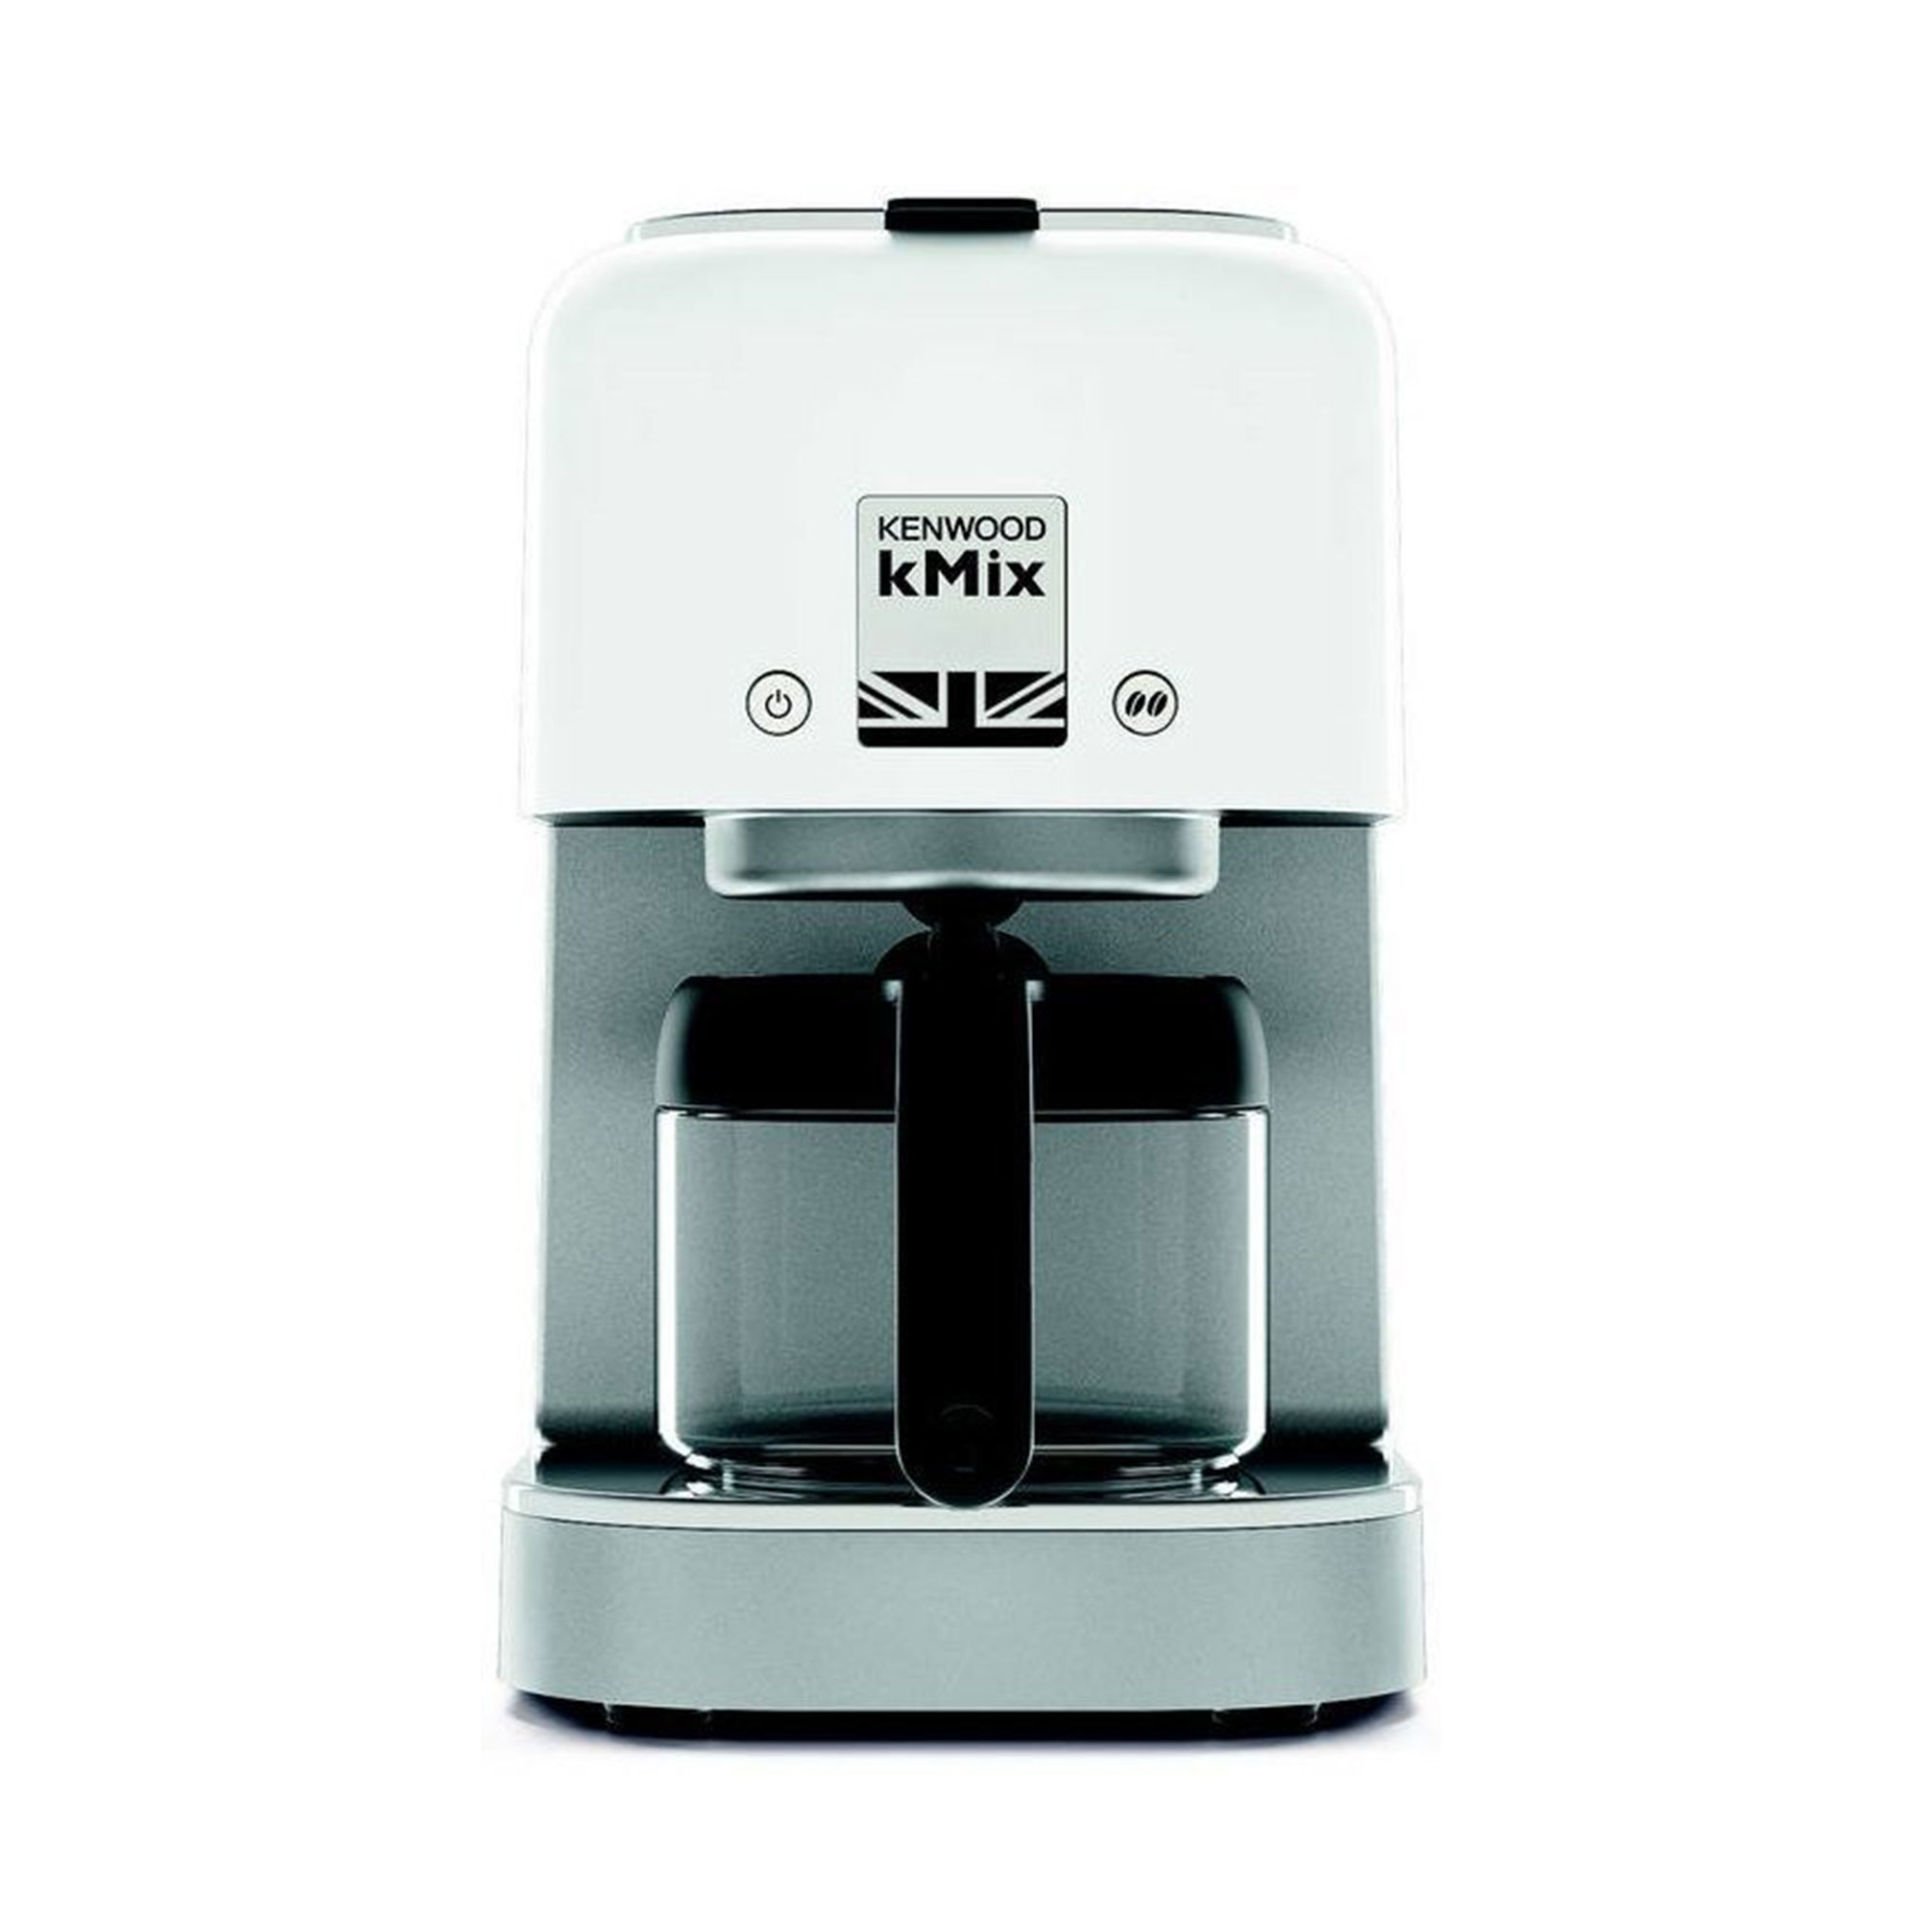 Kenwood COX750BK kMix Filtre Kahve Makinası - Beyaz